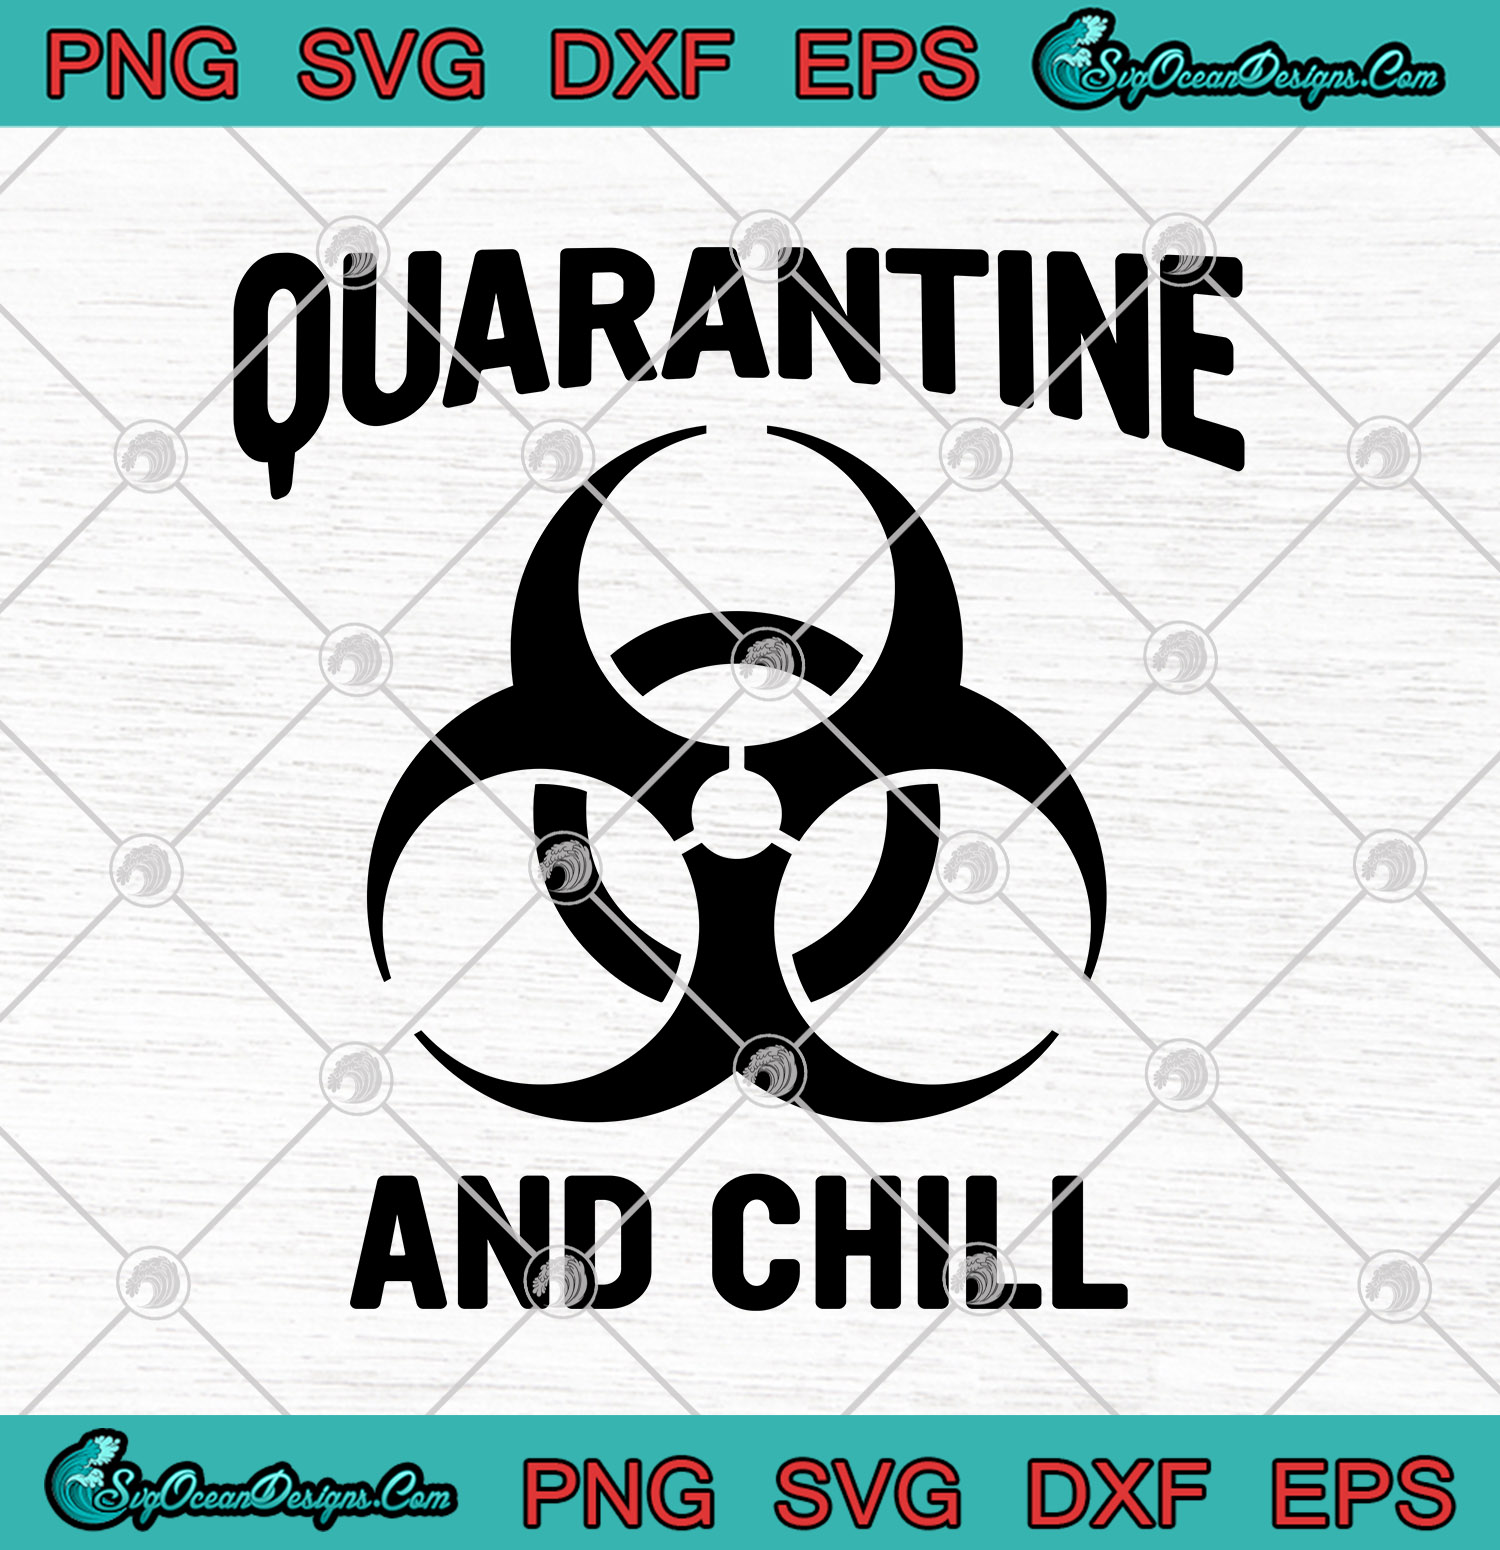 Download Quarantine And Chill Coronavirus SVG PNG-Coronavirus 2020 ...